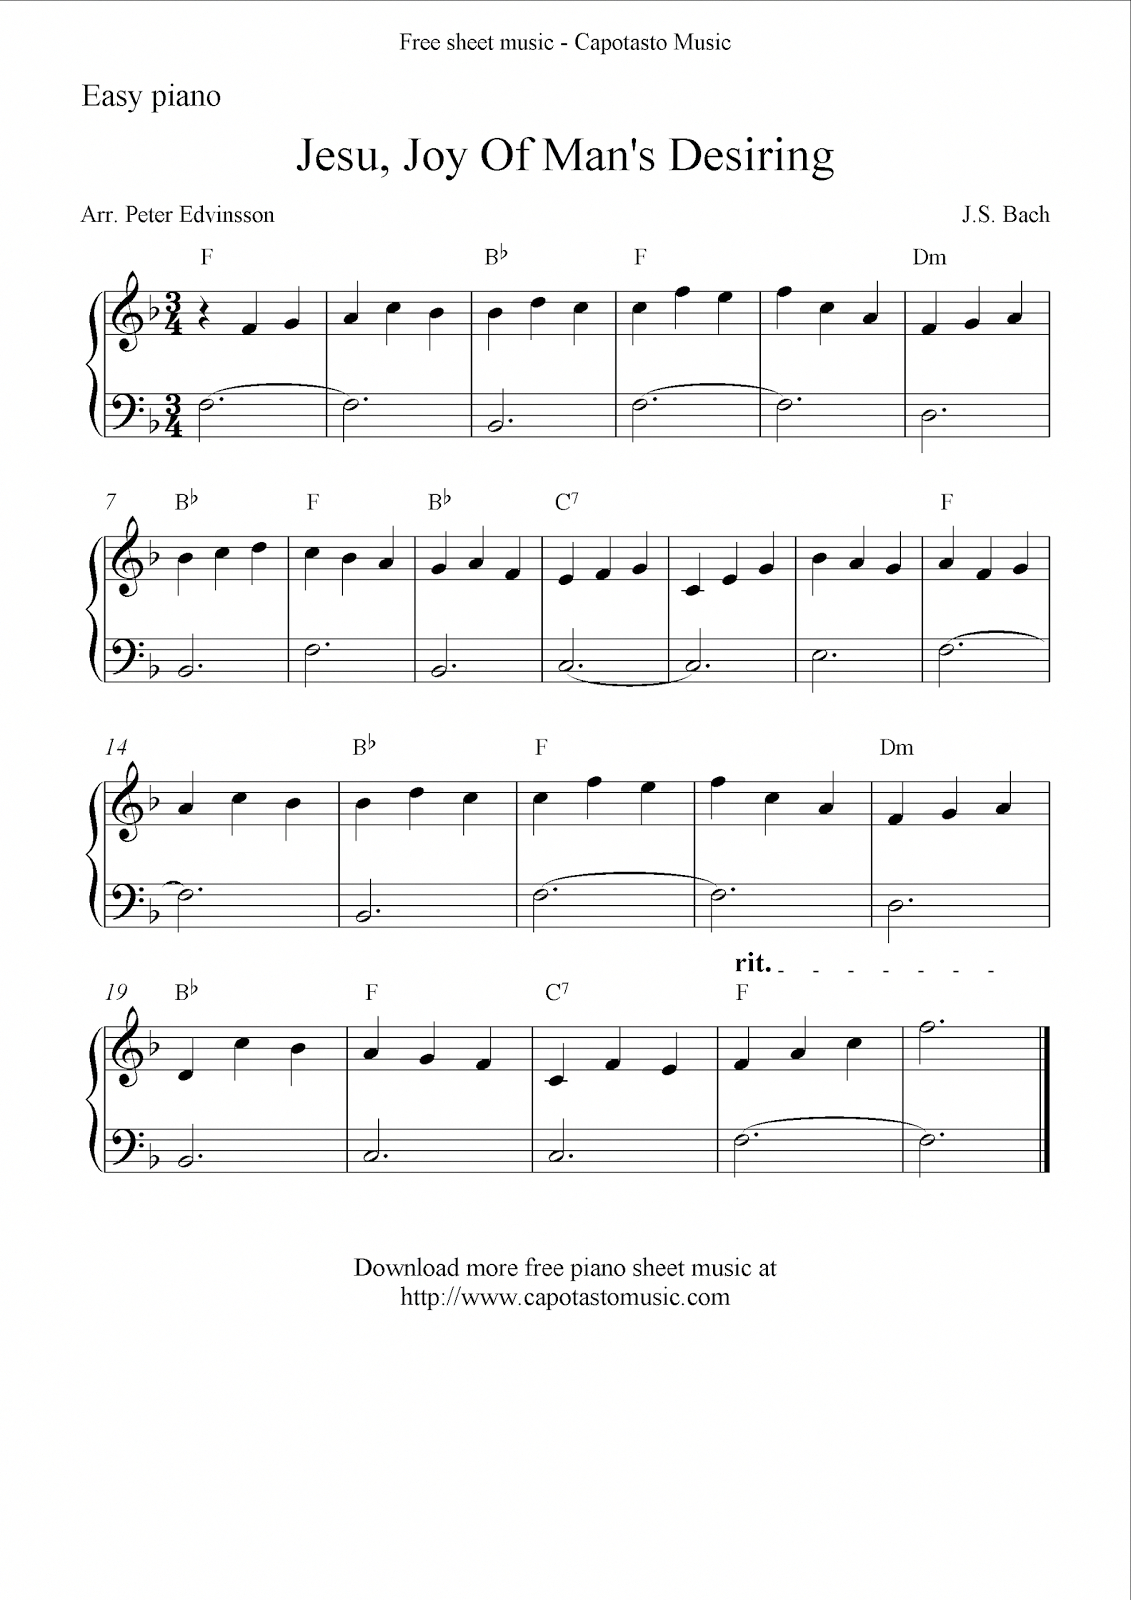 Beginner Piano Worksheets Printable Free Free Printable